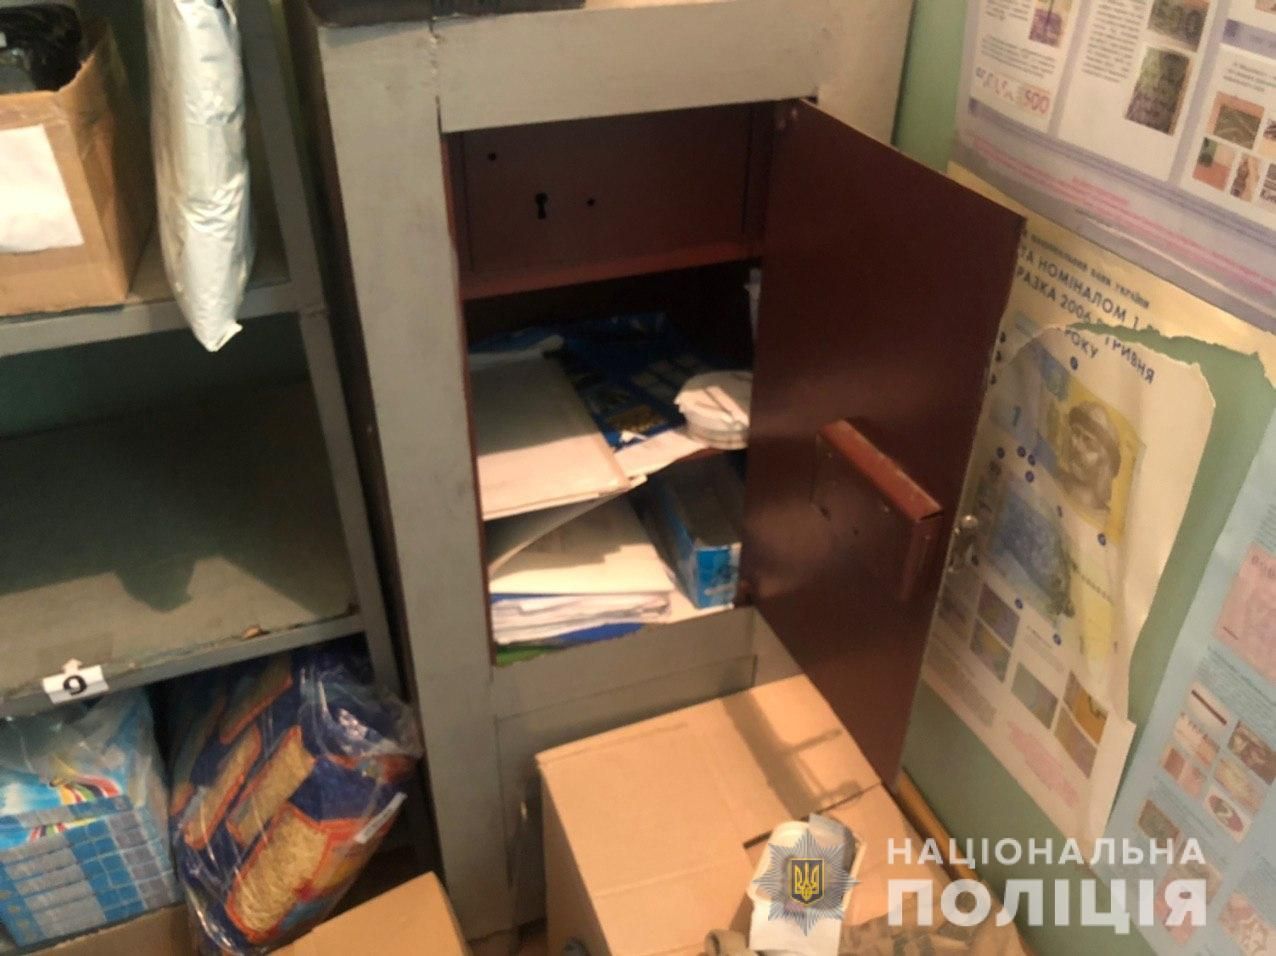 Ограбление почты в Харькове 23 июля 2020 - фото, видео